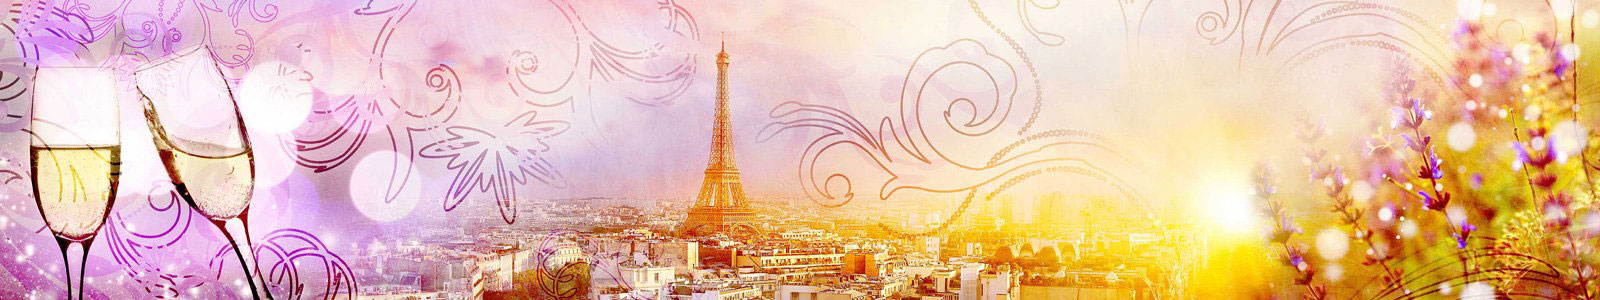 №6378 - Коллаж панорамы Парижа с бокалами шампанского и лавандой